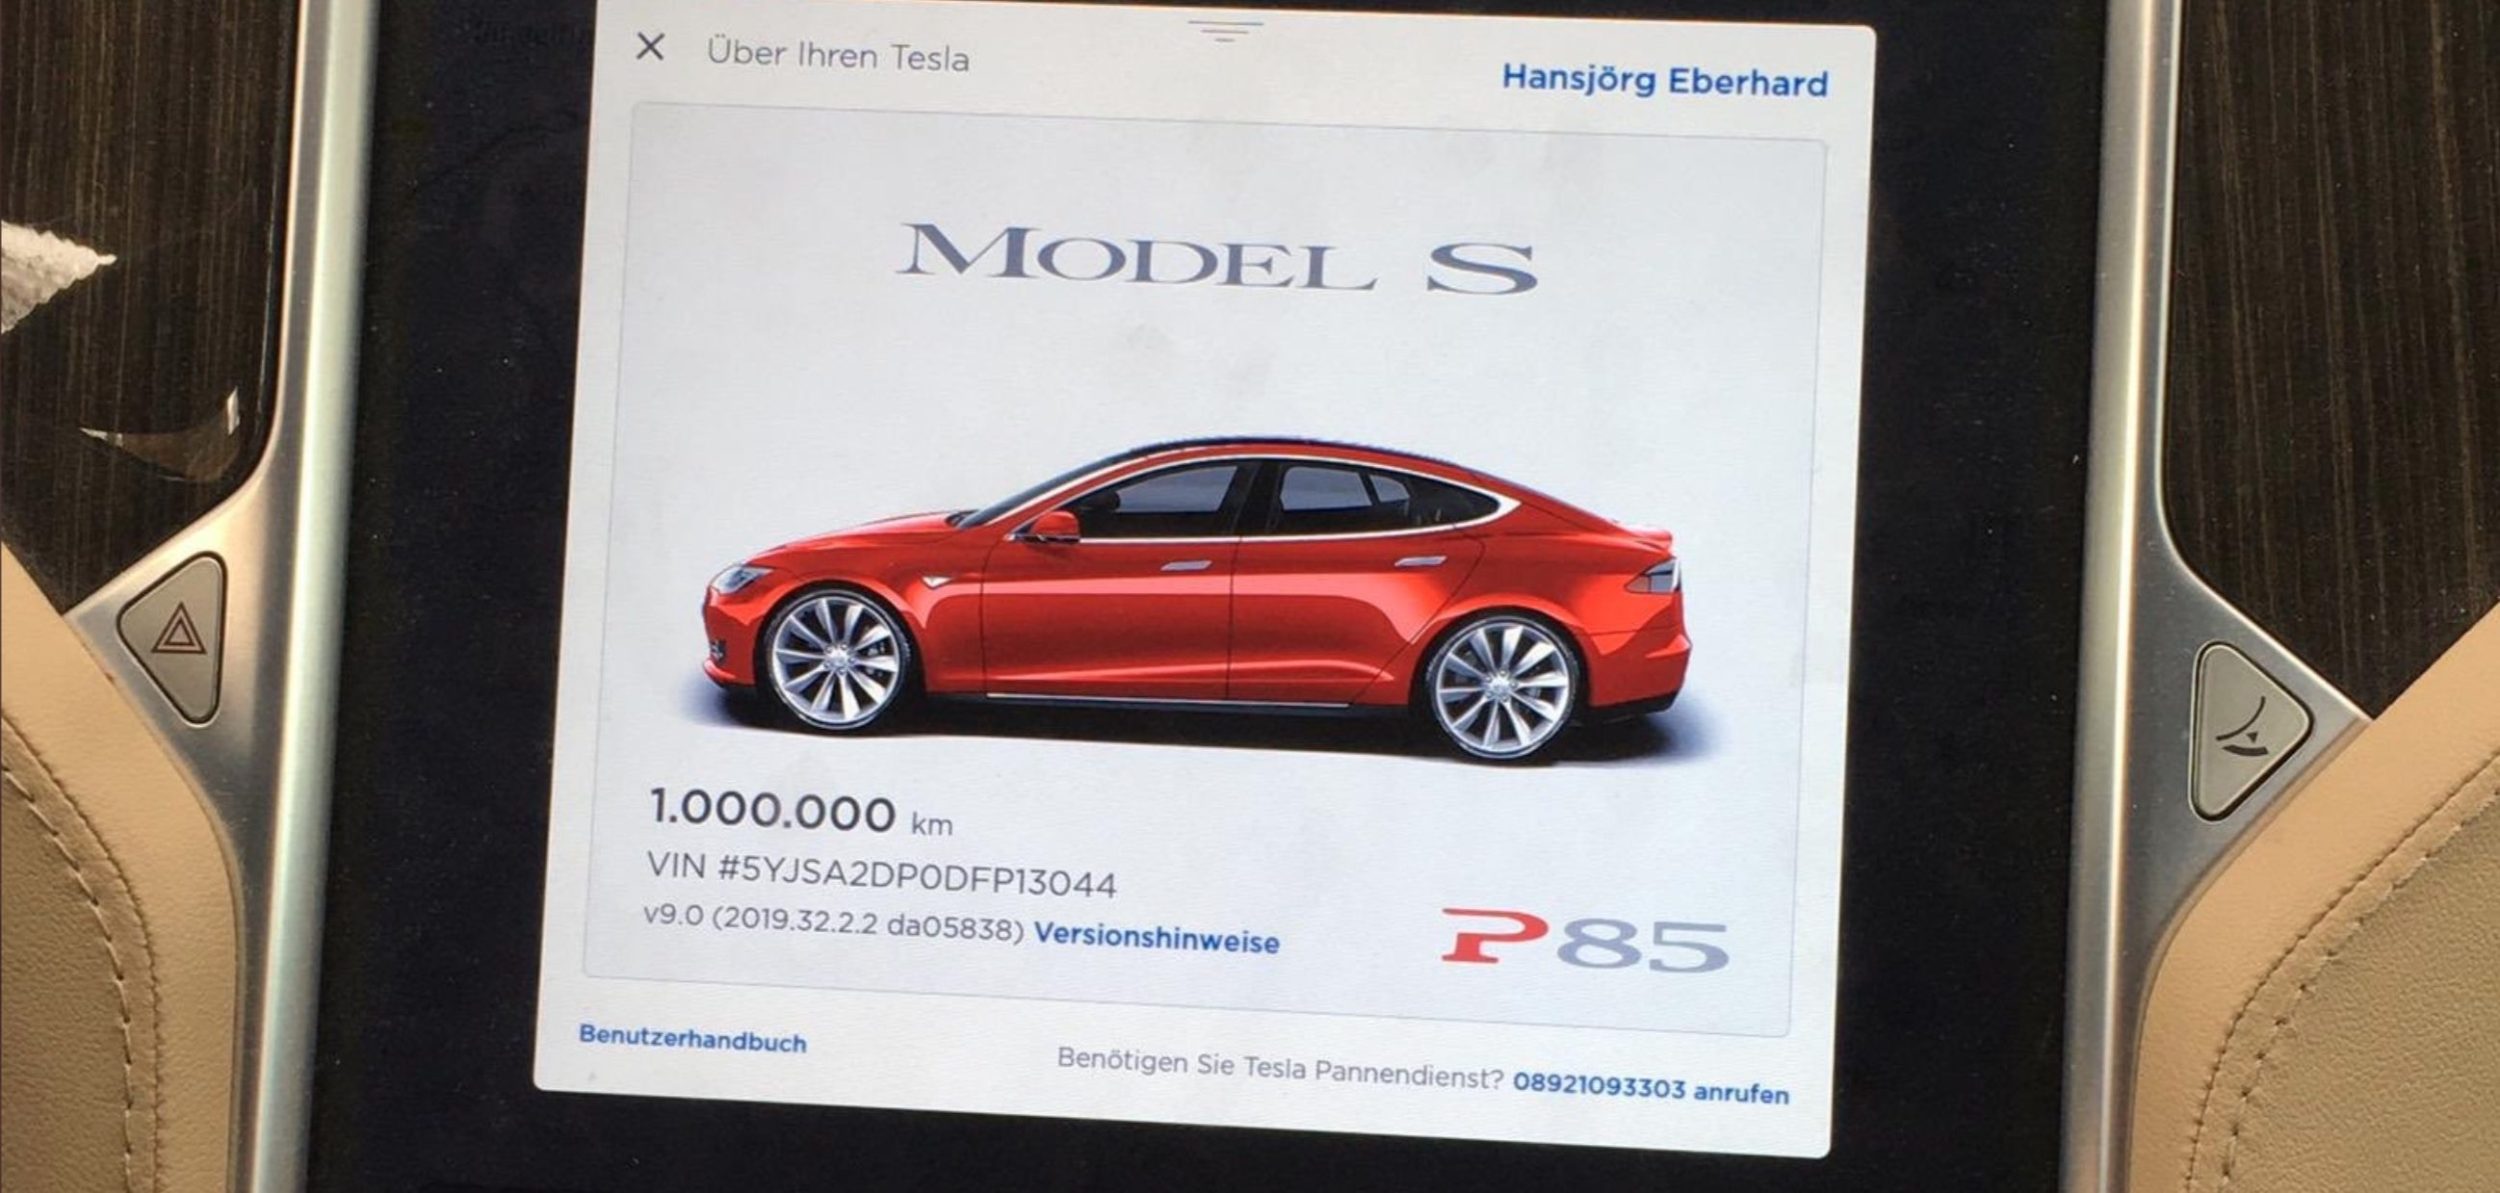 Model S 1.000.000 kilometer